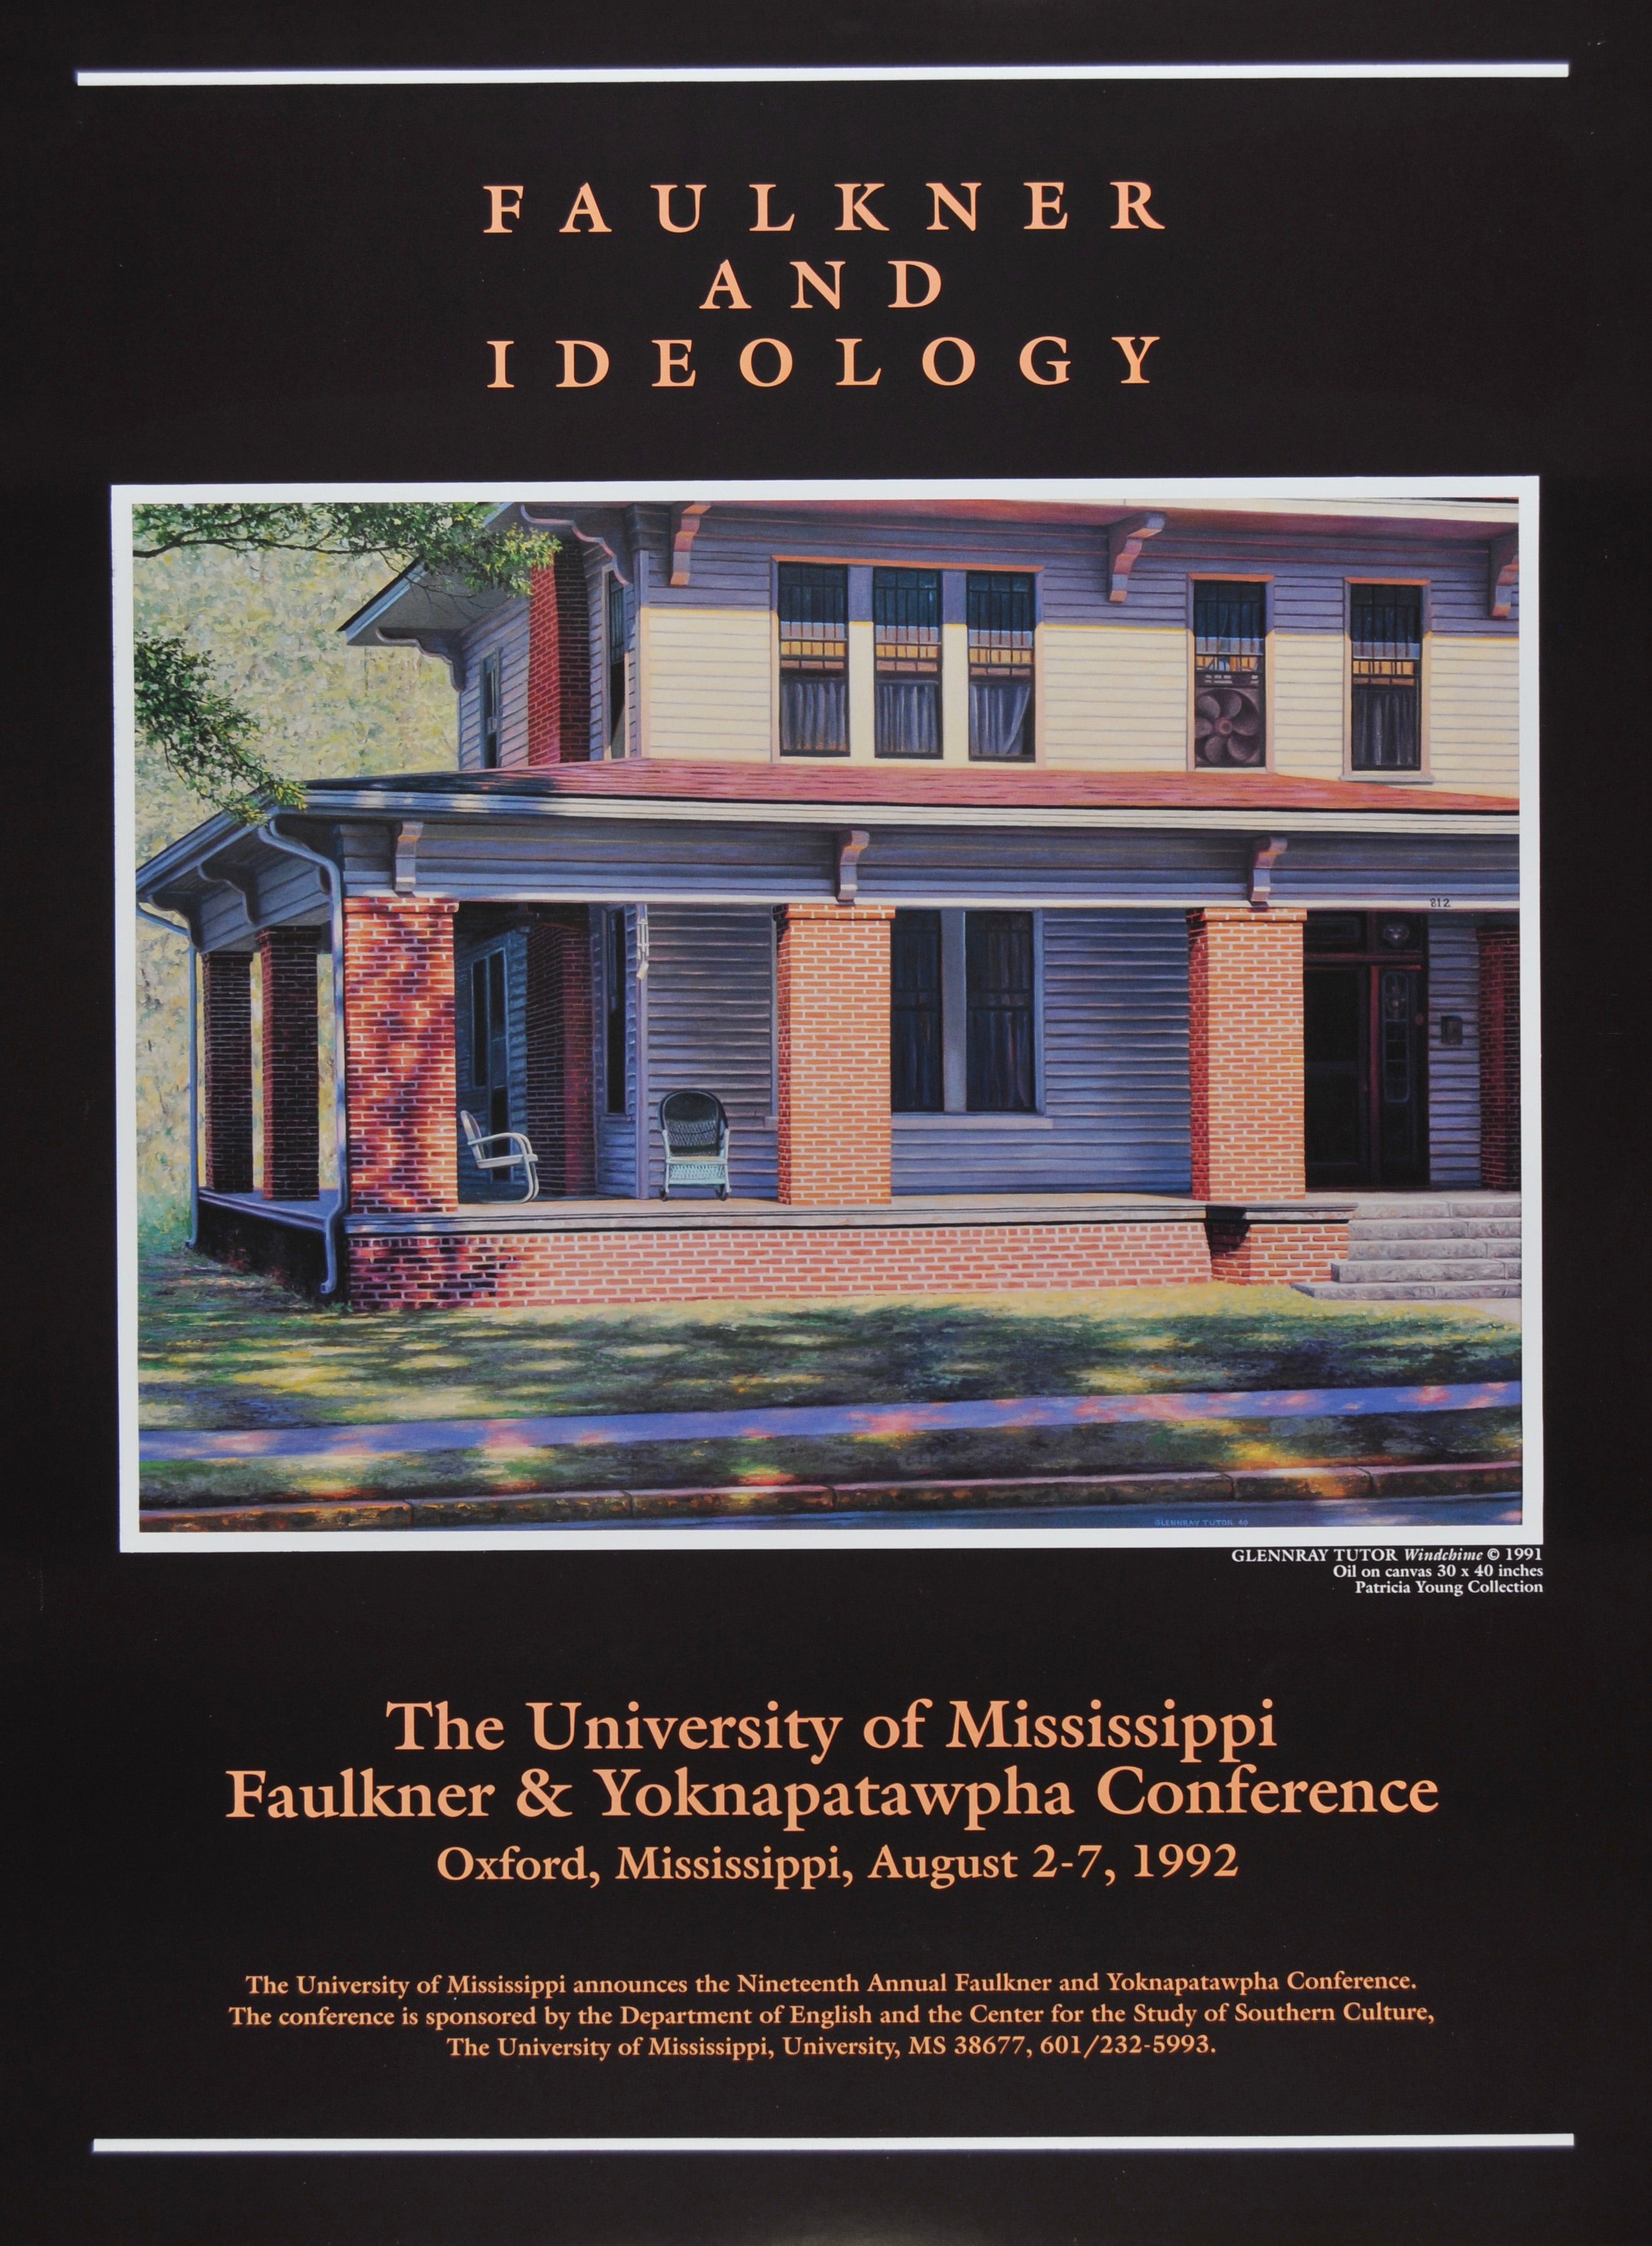 "Faulkner & Ideology"